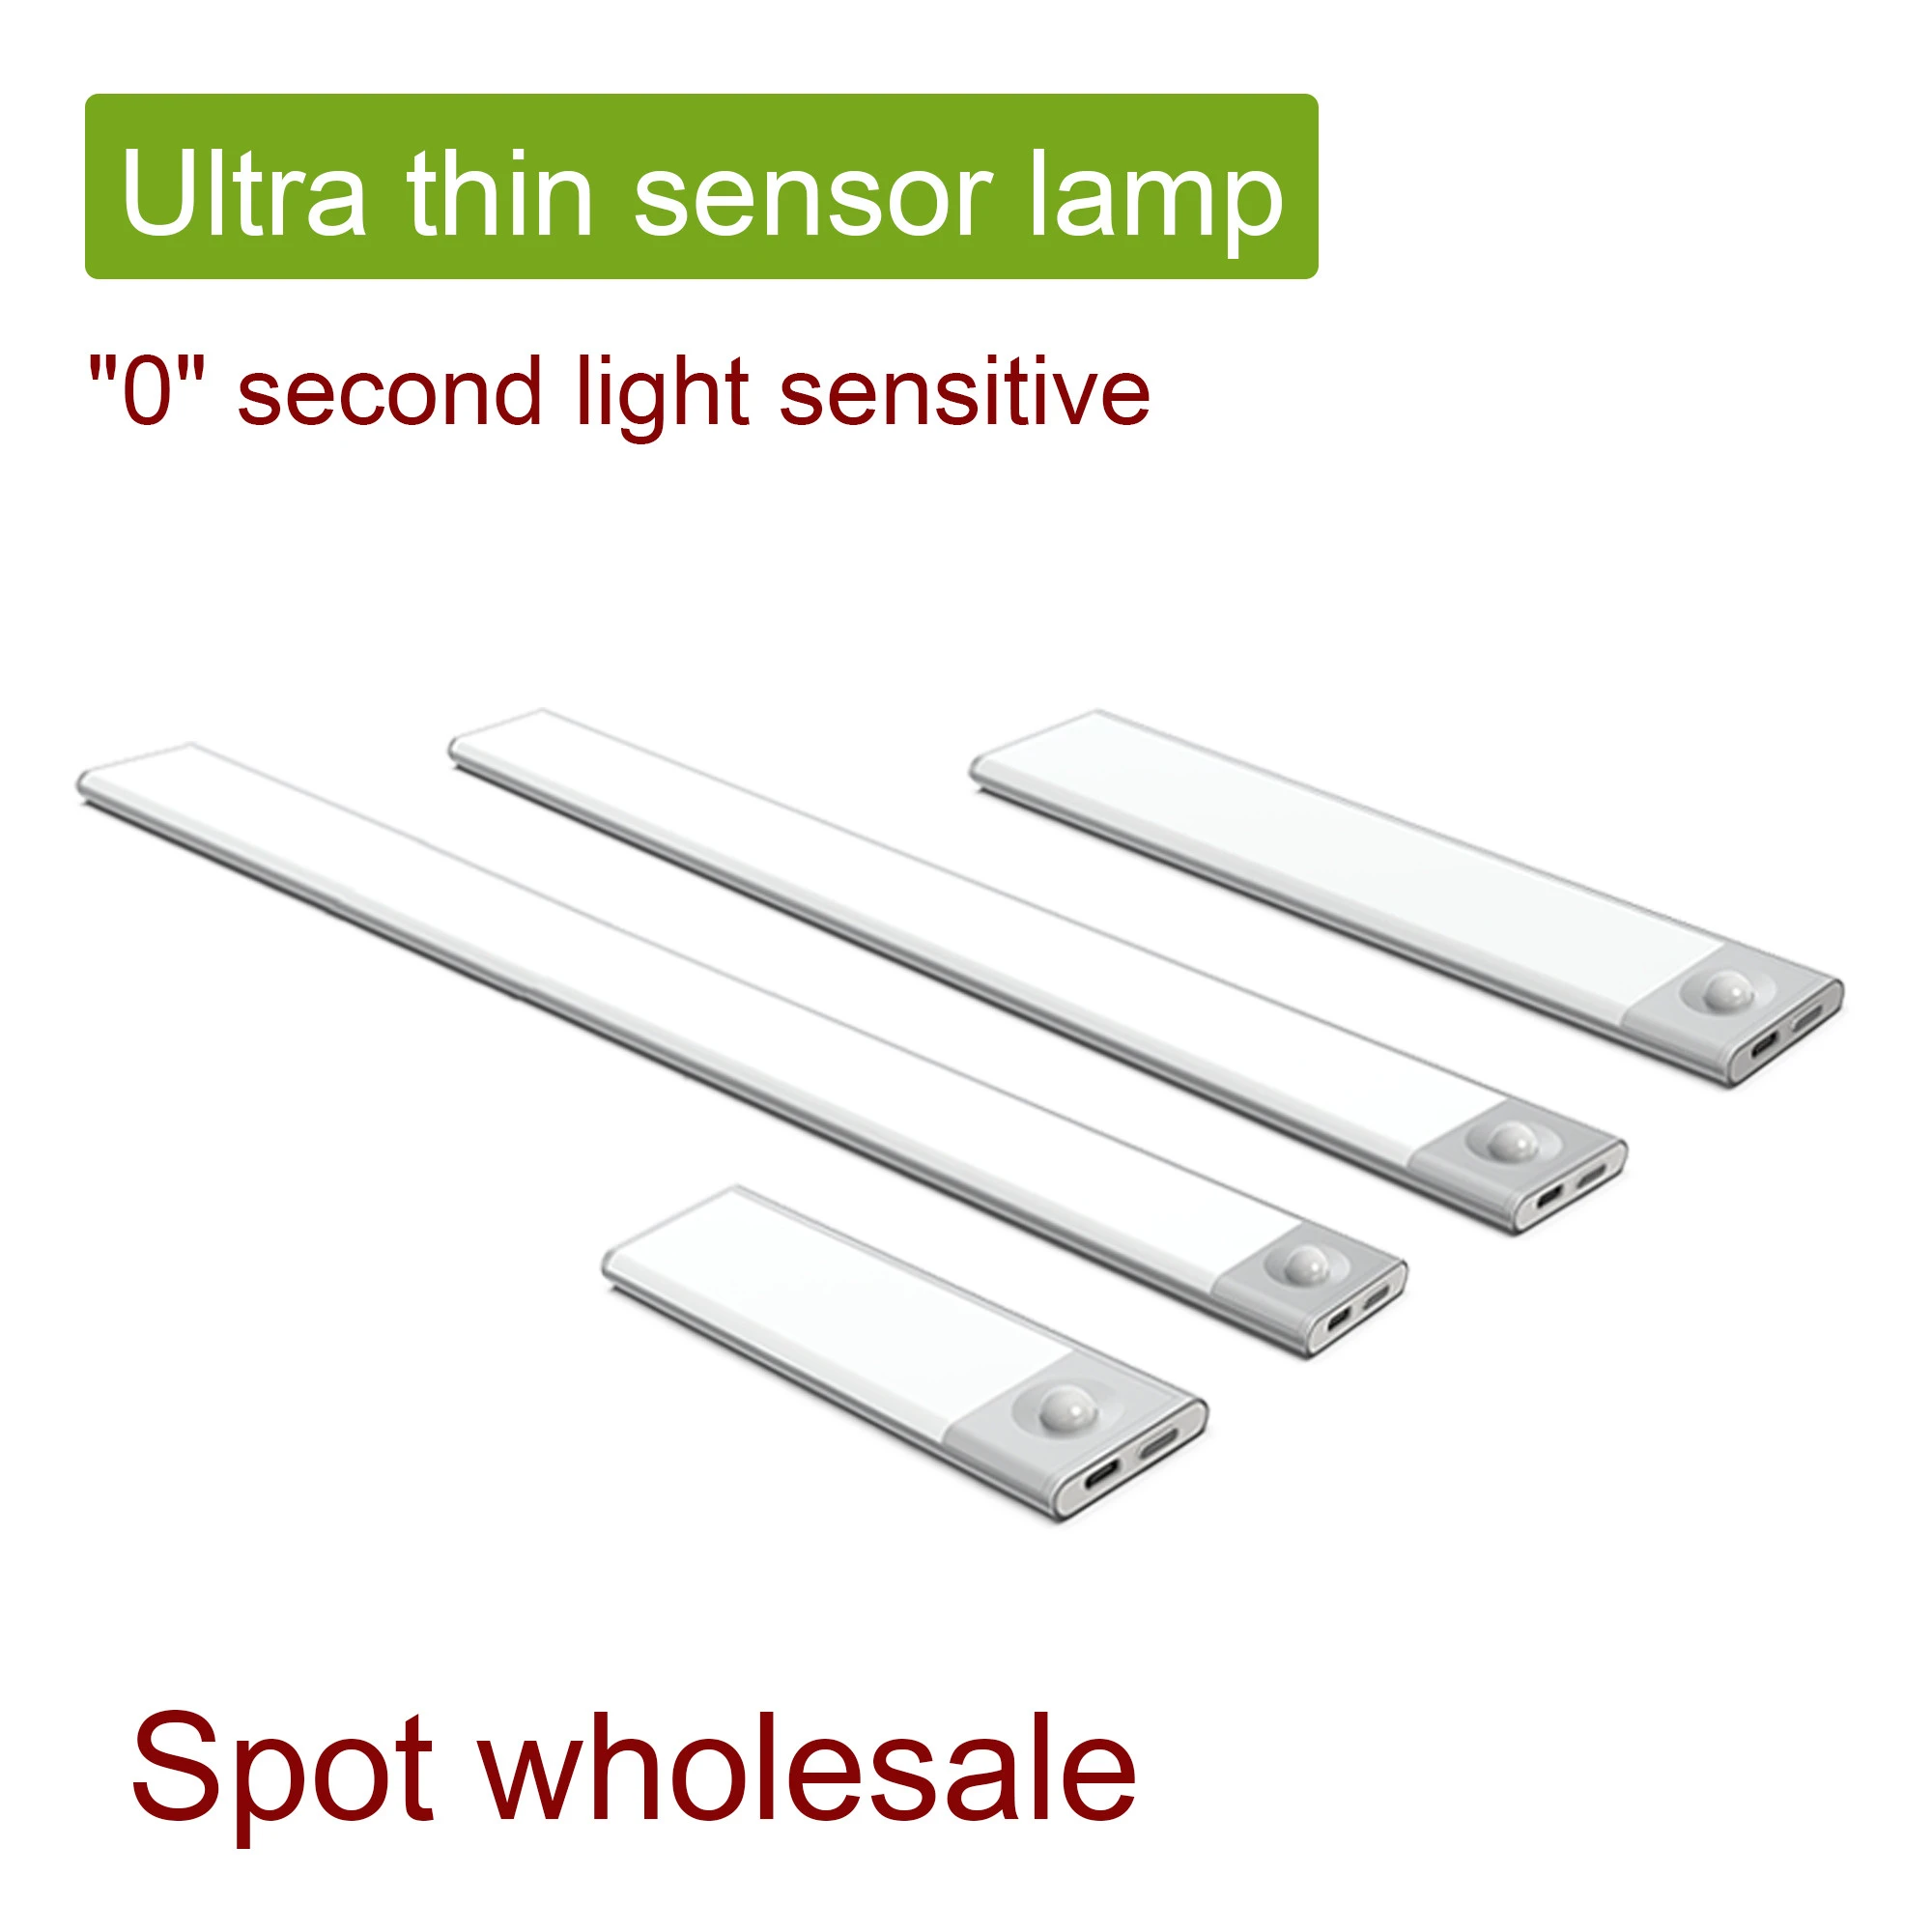 Stick on Anywhere Portable Ultrathin Light PIR Motion Sensor Night Lighting Wireless USB Charging LED Under Cabinet Light